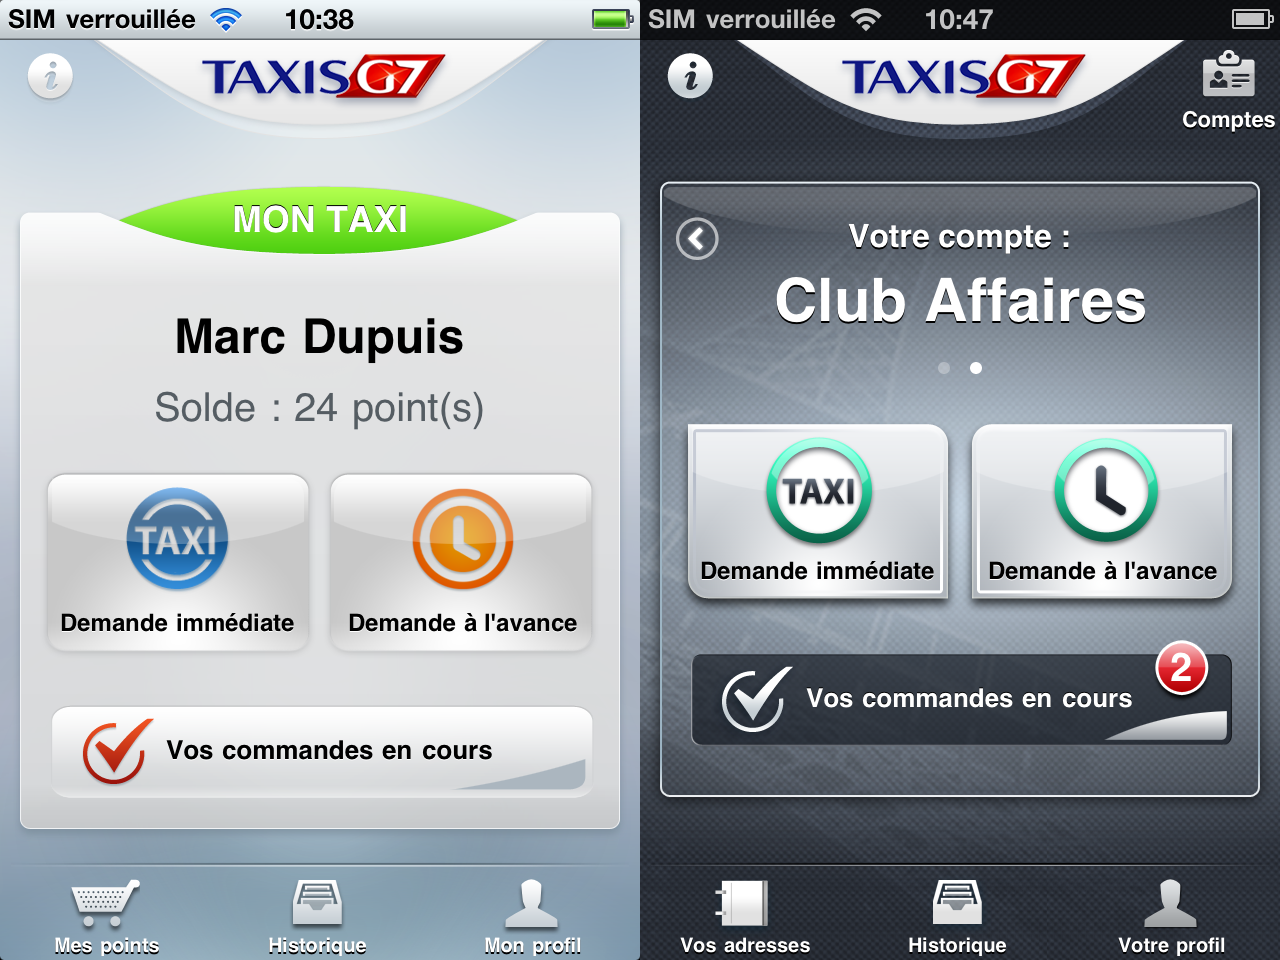 Des Taxis G7 prioritaires grâce à une appli depuis l’iPhone